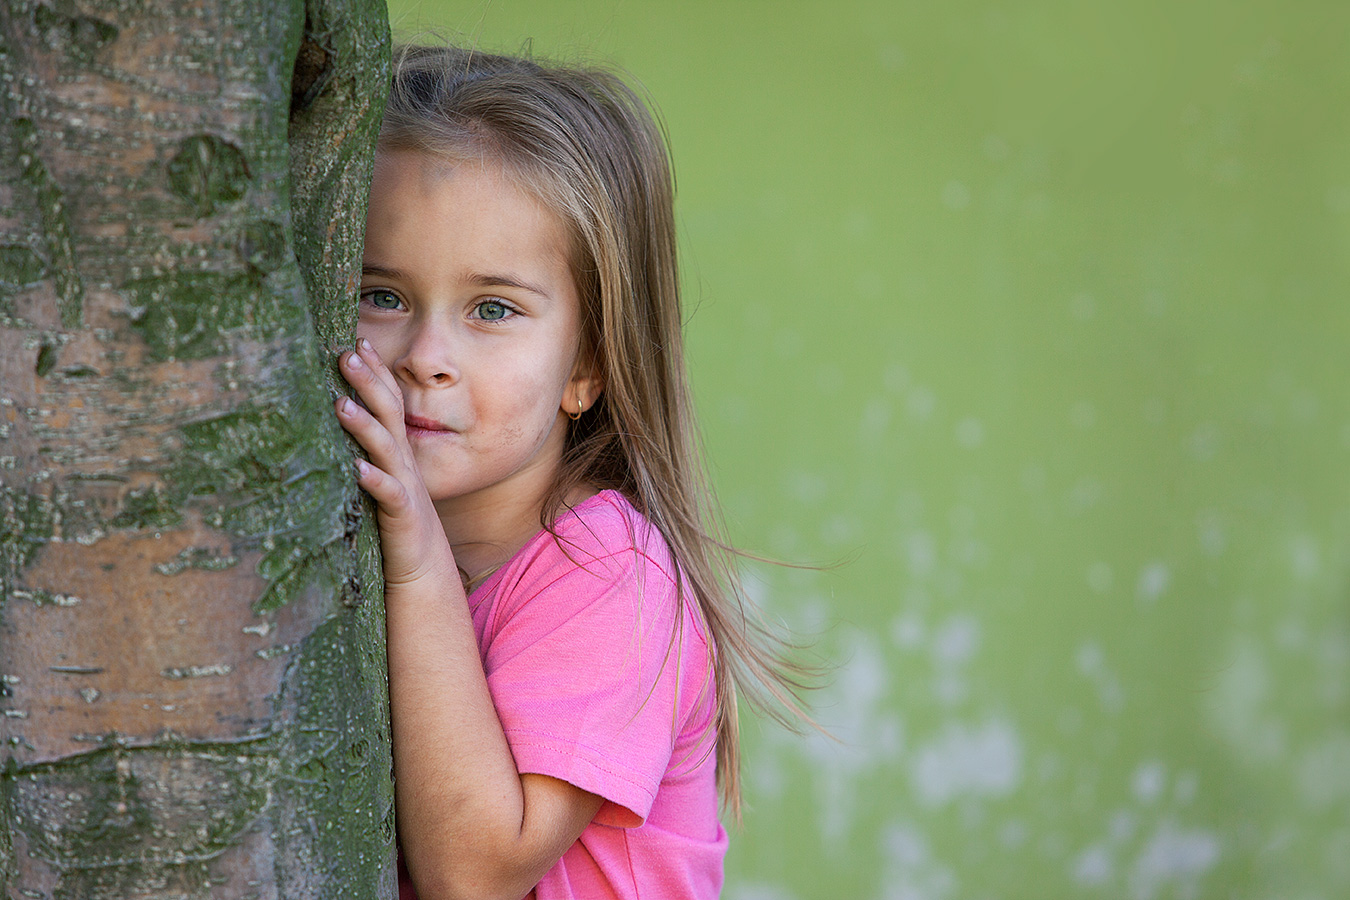 Fotografie eines Mädchens im rosa T-Shirt, hald hinter einem Baum versteckt und hervorlugend